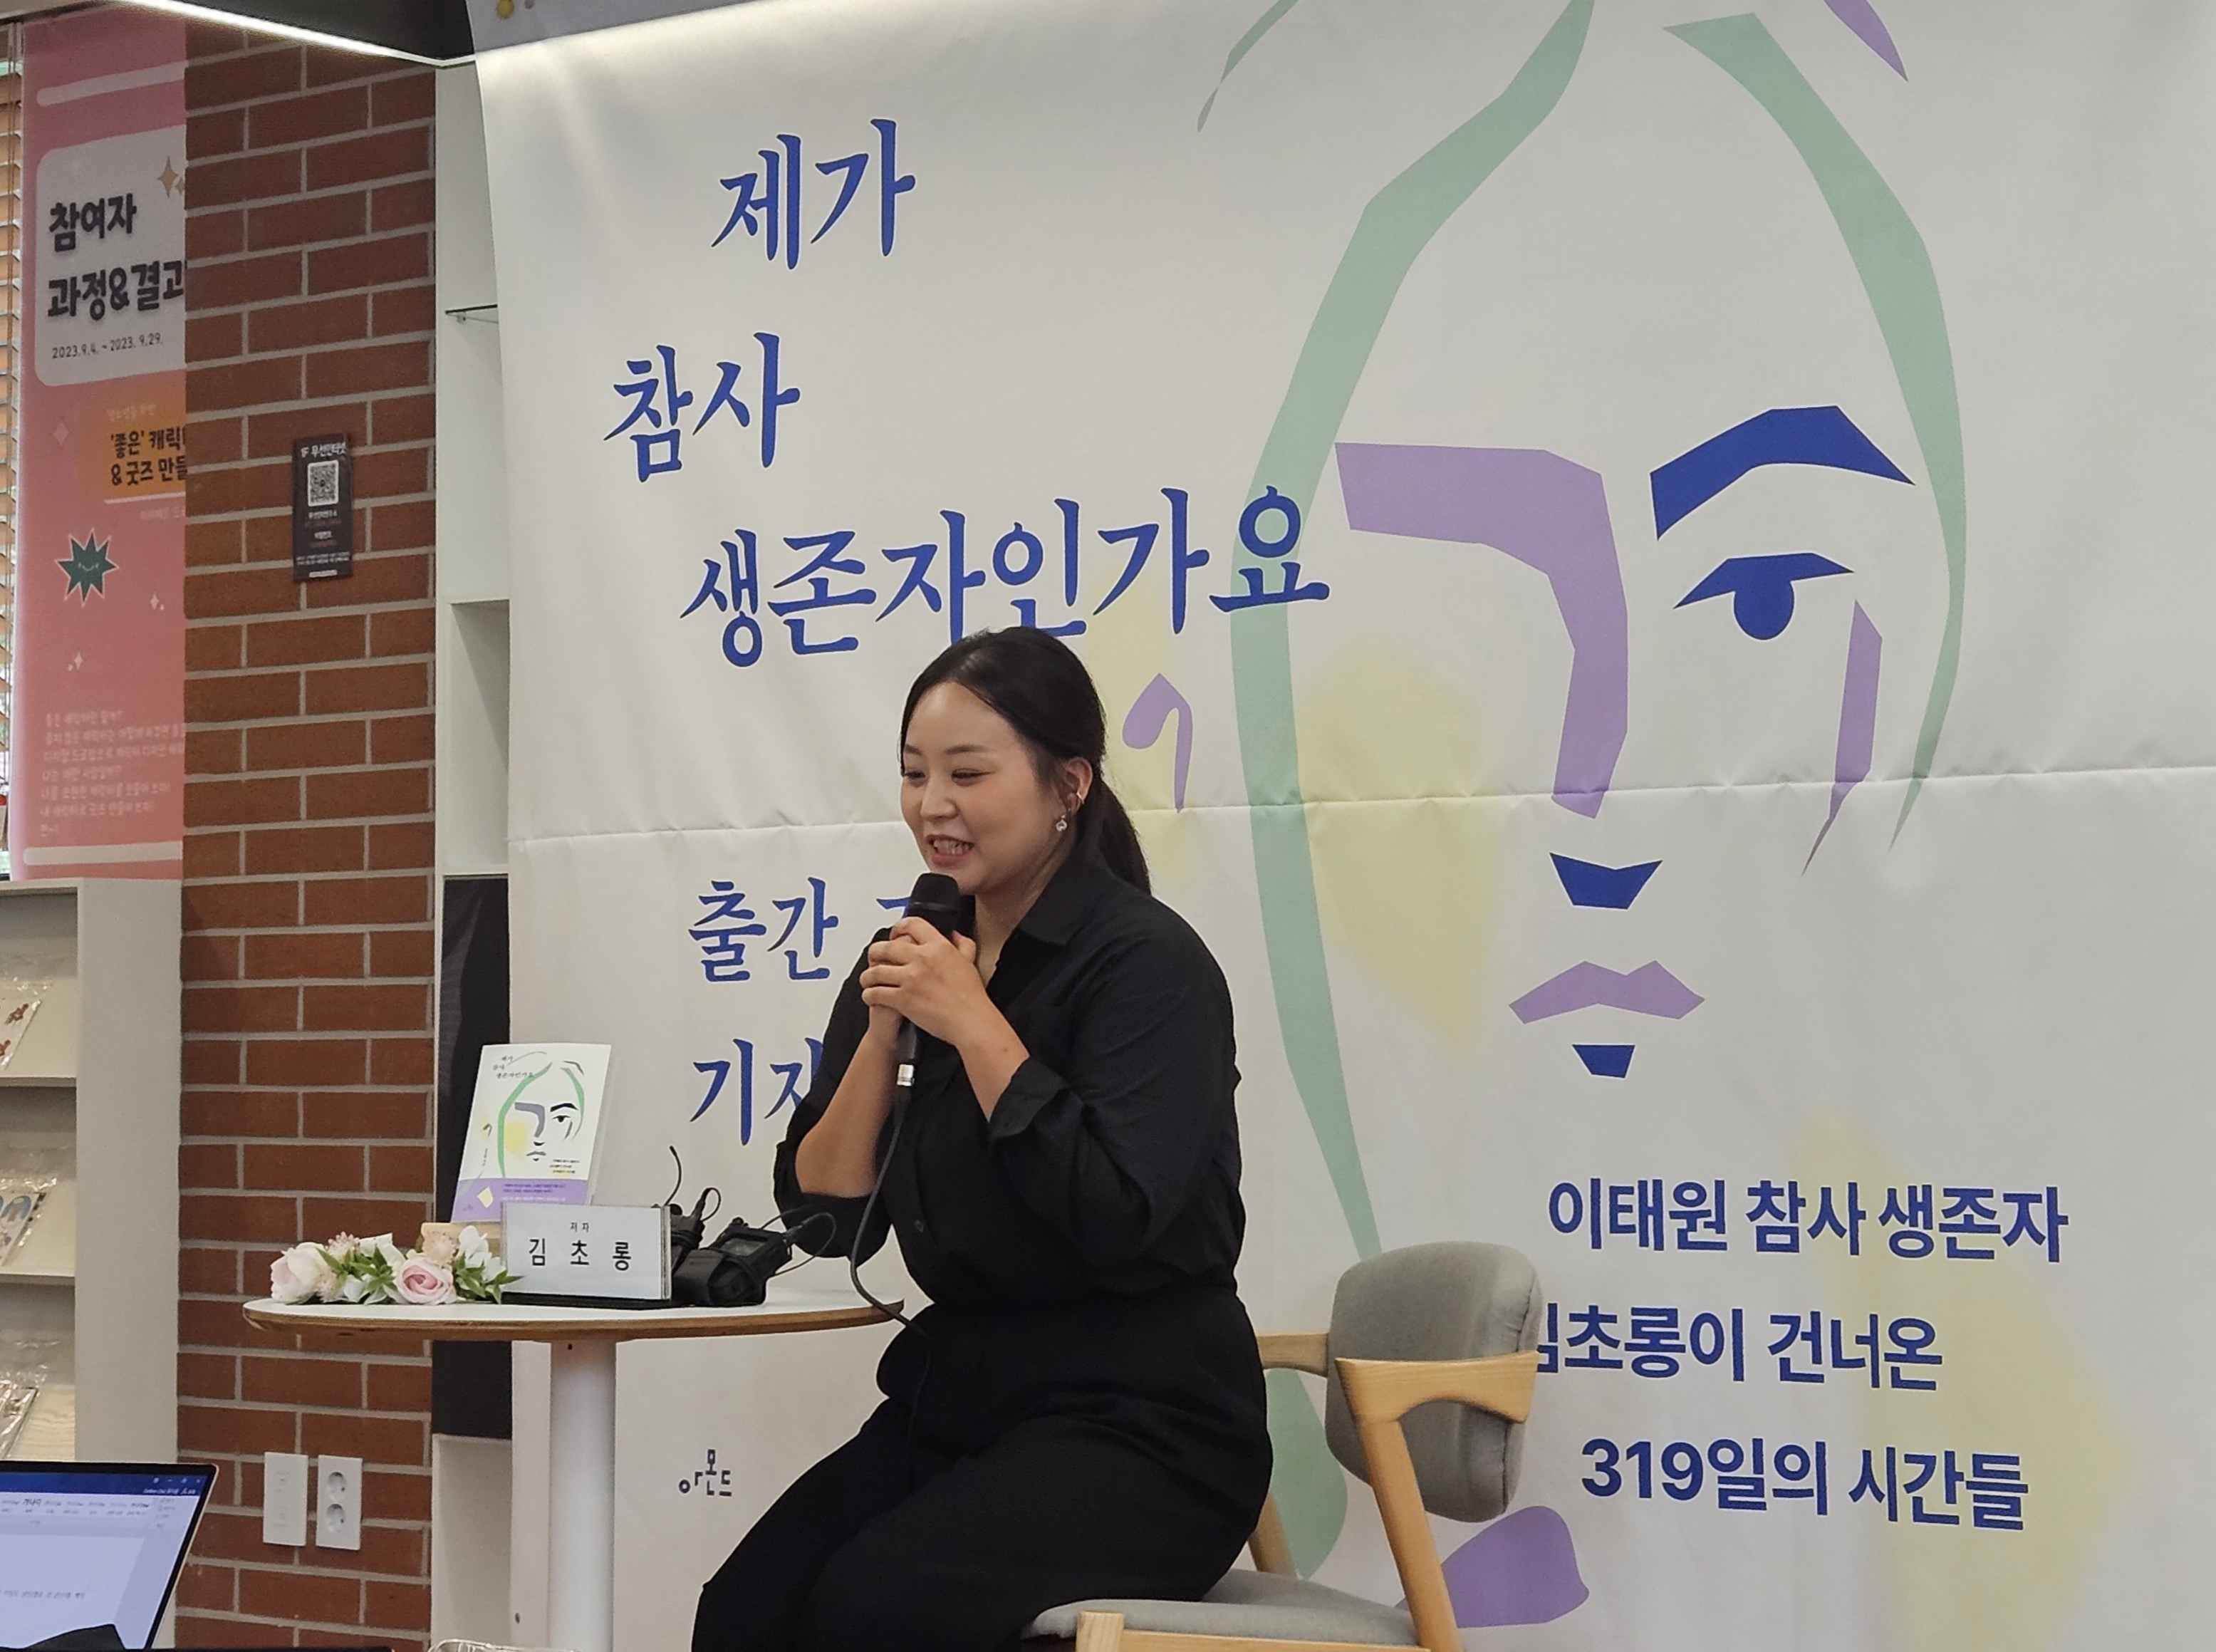 지난 19일 서울 마포구 마포여성동행센터에서 이태원 참사 생존자 김초롱씨가 기자의 질문에 답하고 있다. 이날 김씨는 참사 이후 319일간의 기록을 담은 책 ‘제가 참사 생존자인가요’를 공개했다. 강동용 기자